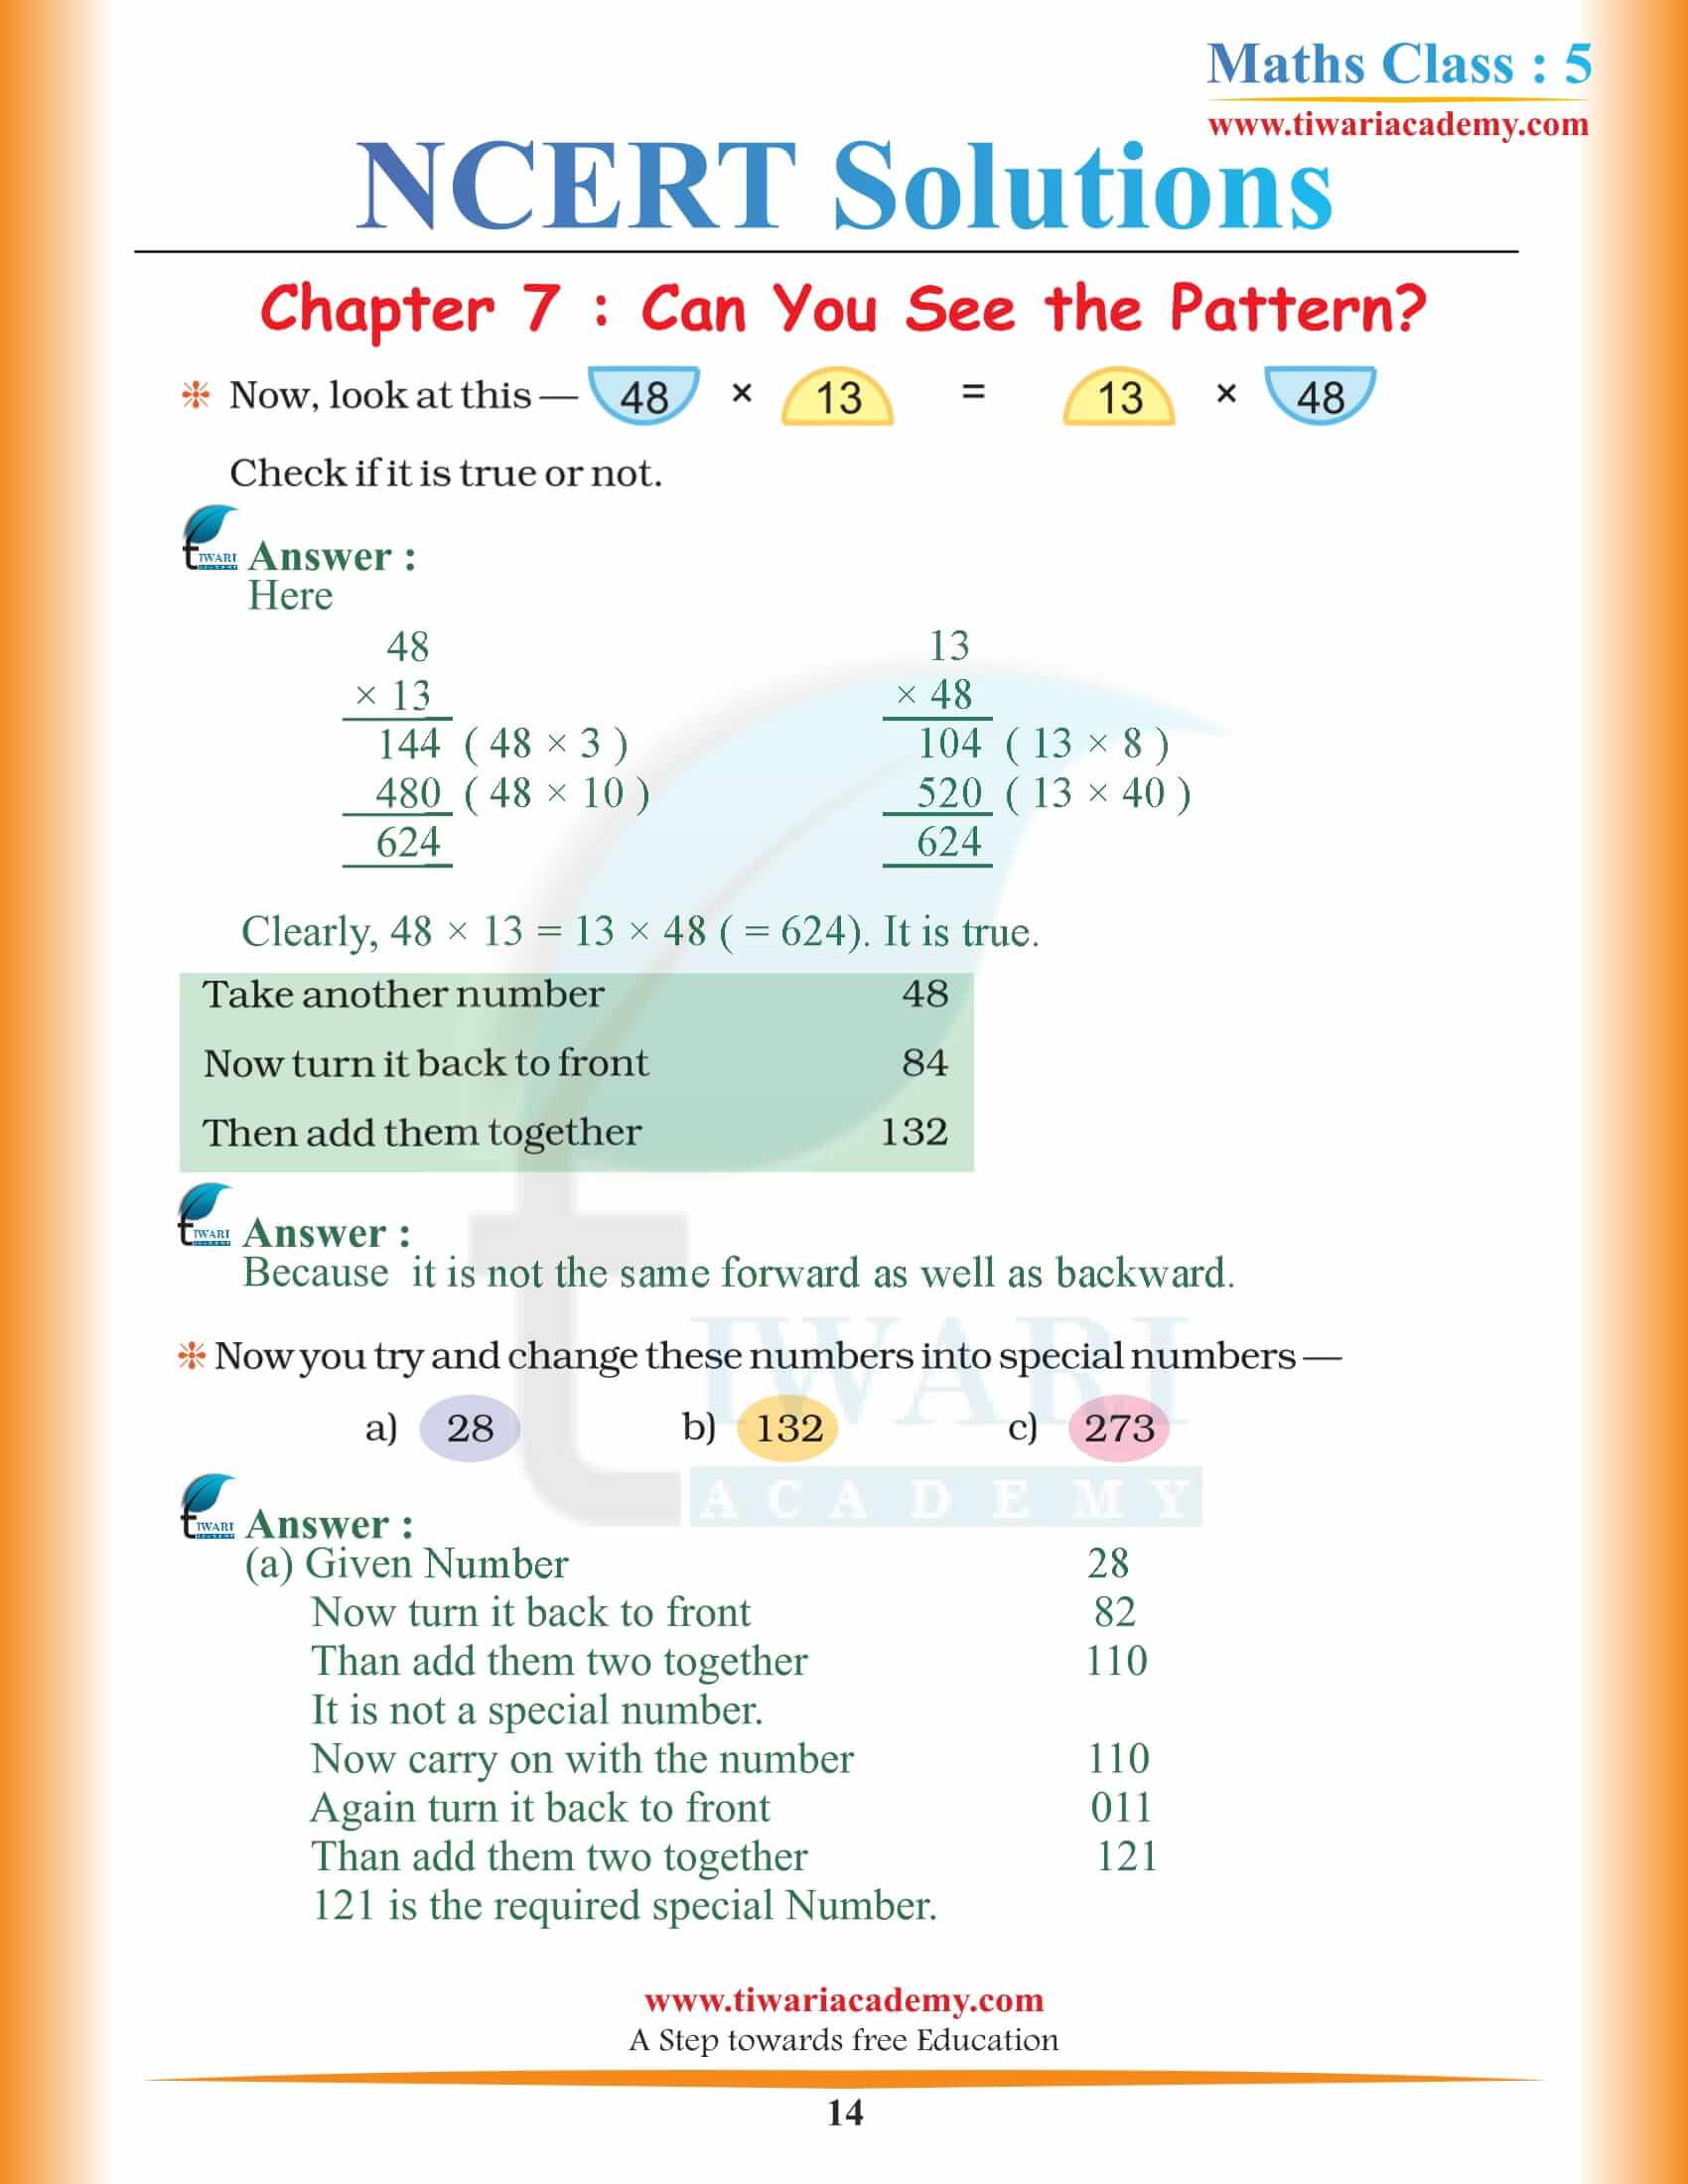 Class 5 Maths Chapter 7 NCERT Solutions free